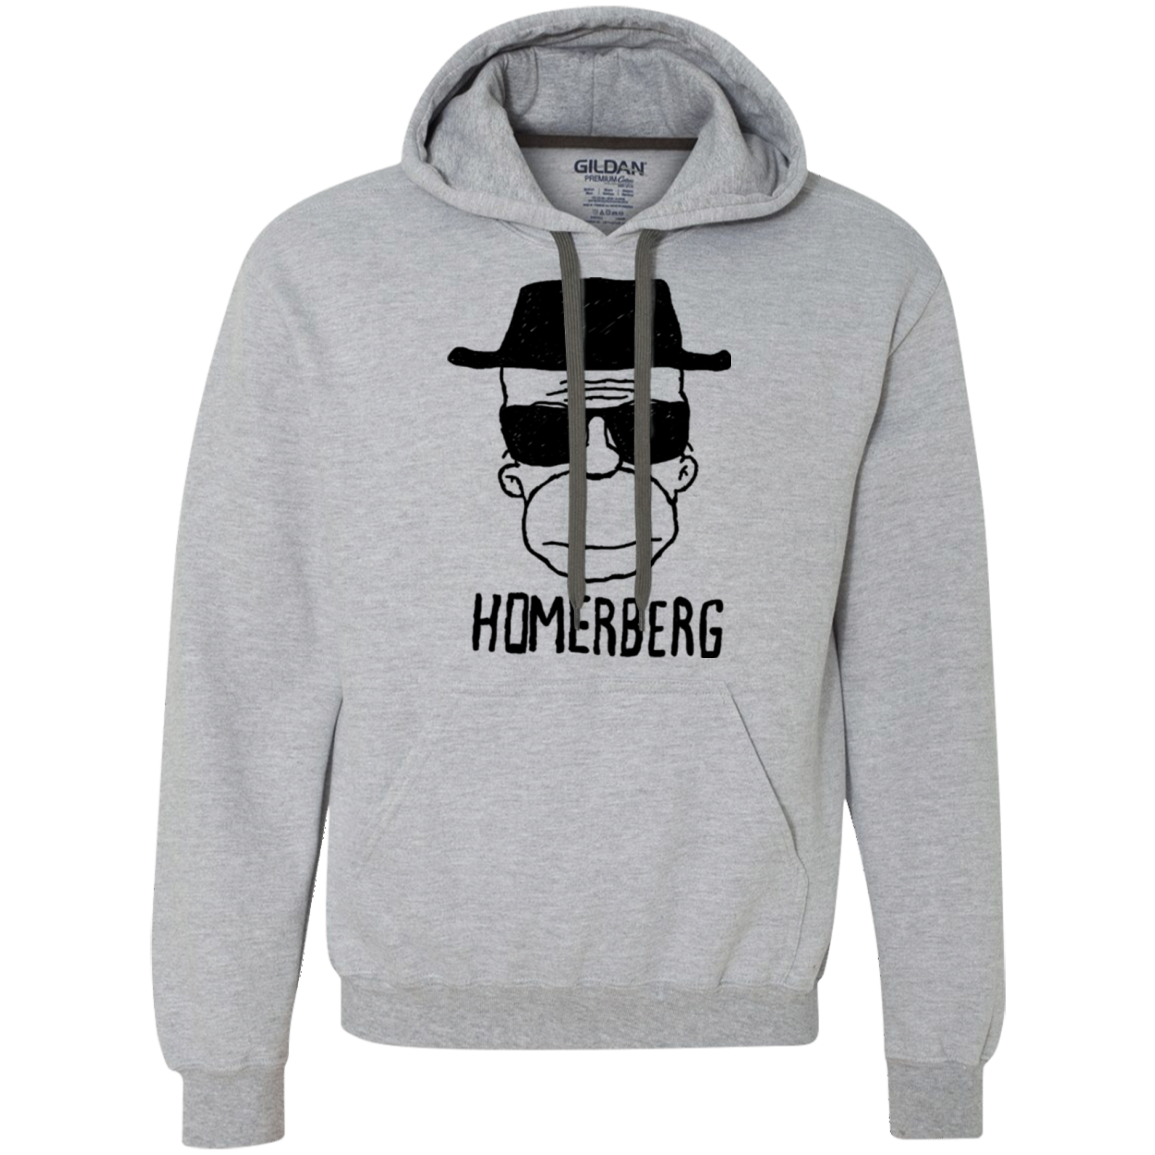 Homerberg Premium Fleece Hoodie